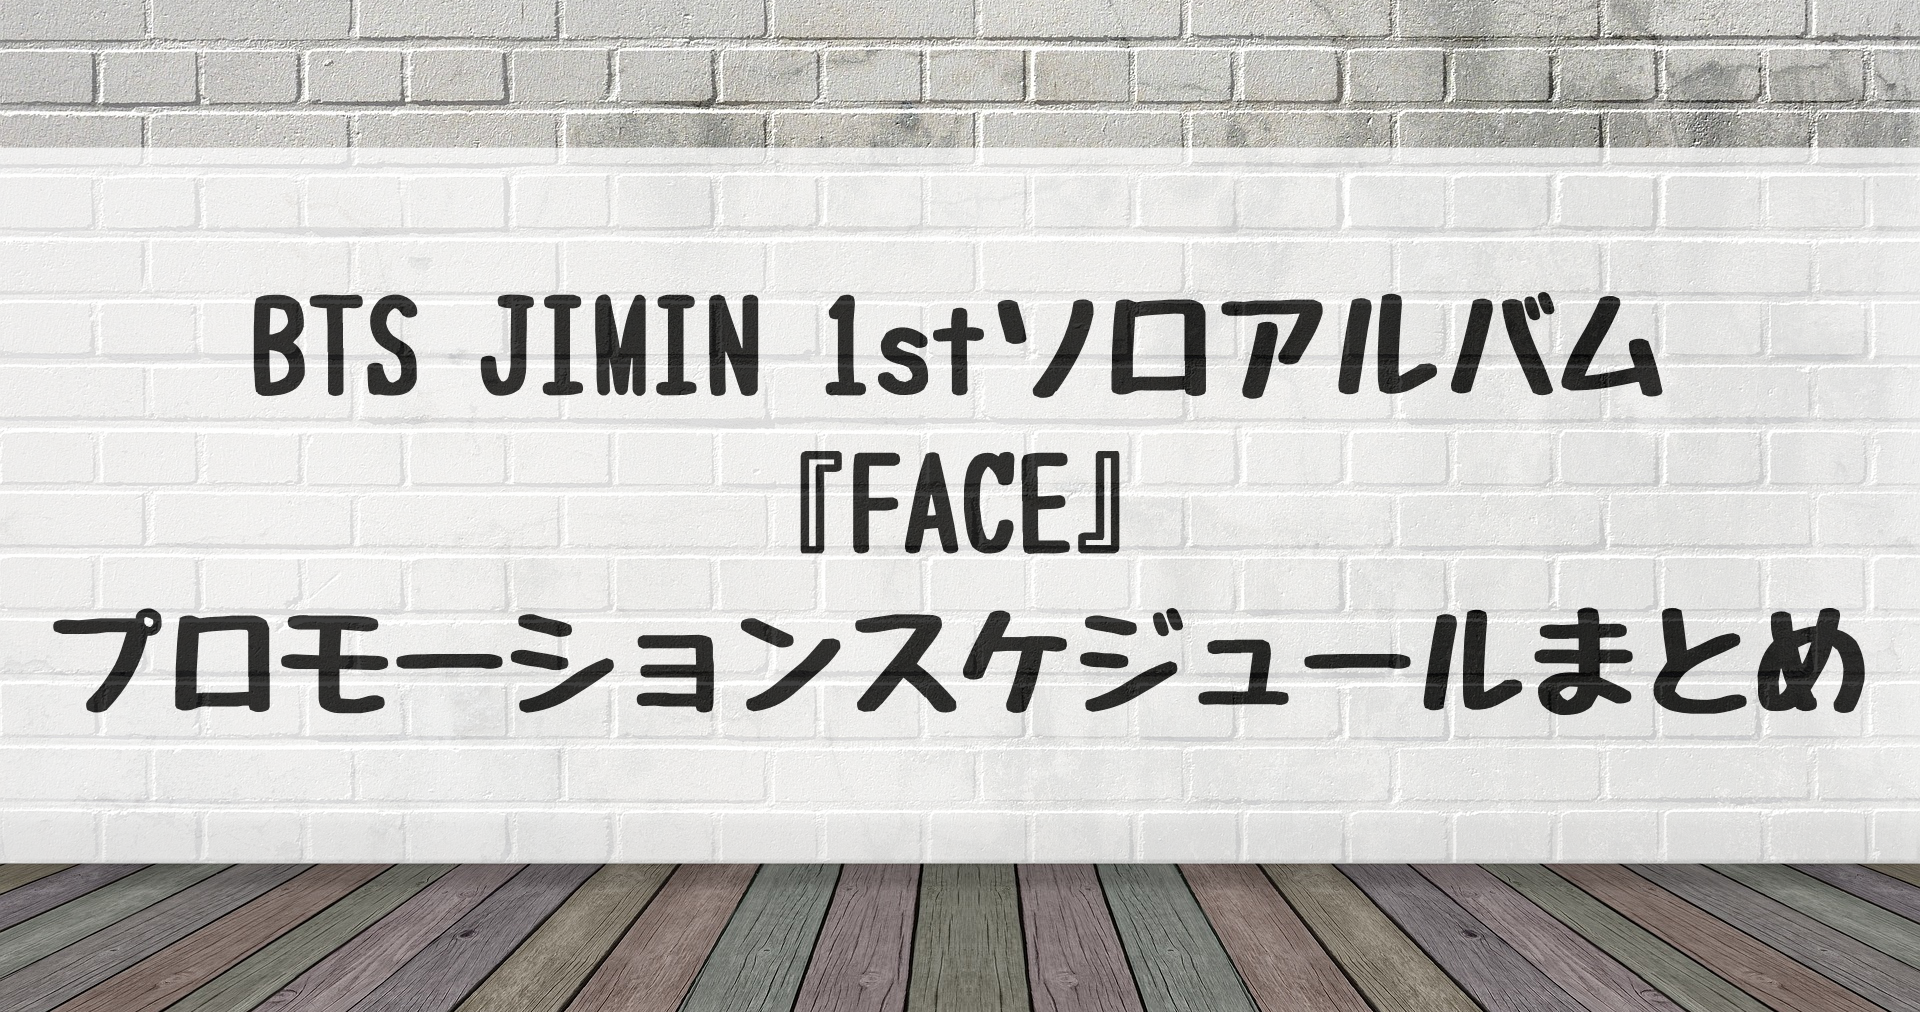 BTS JIMIN 1stソロアルバム『FACE』プロモーションスケジュール